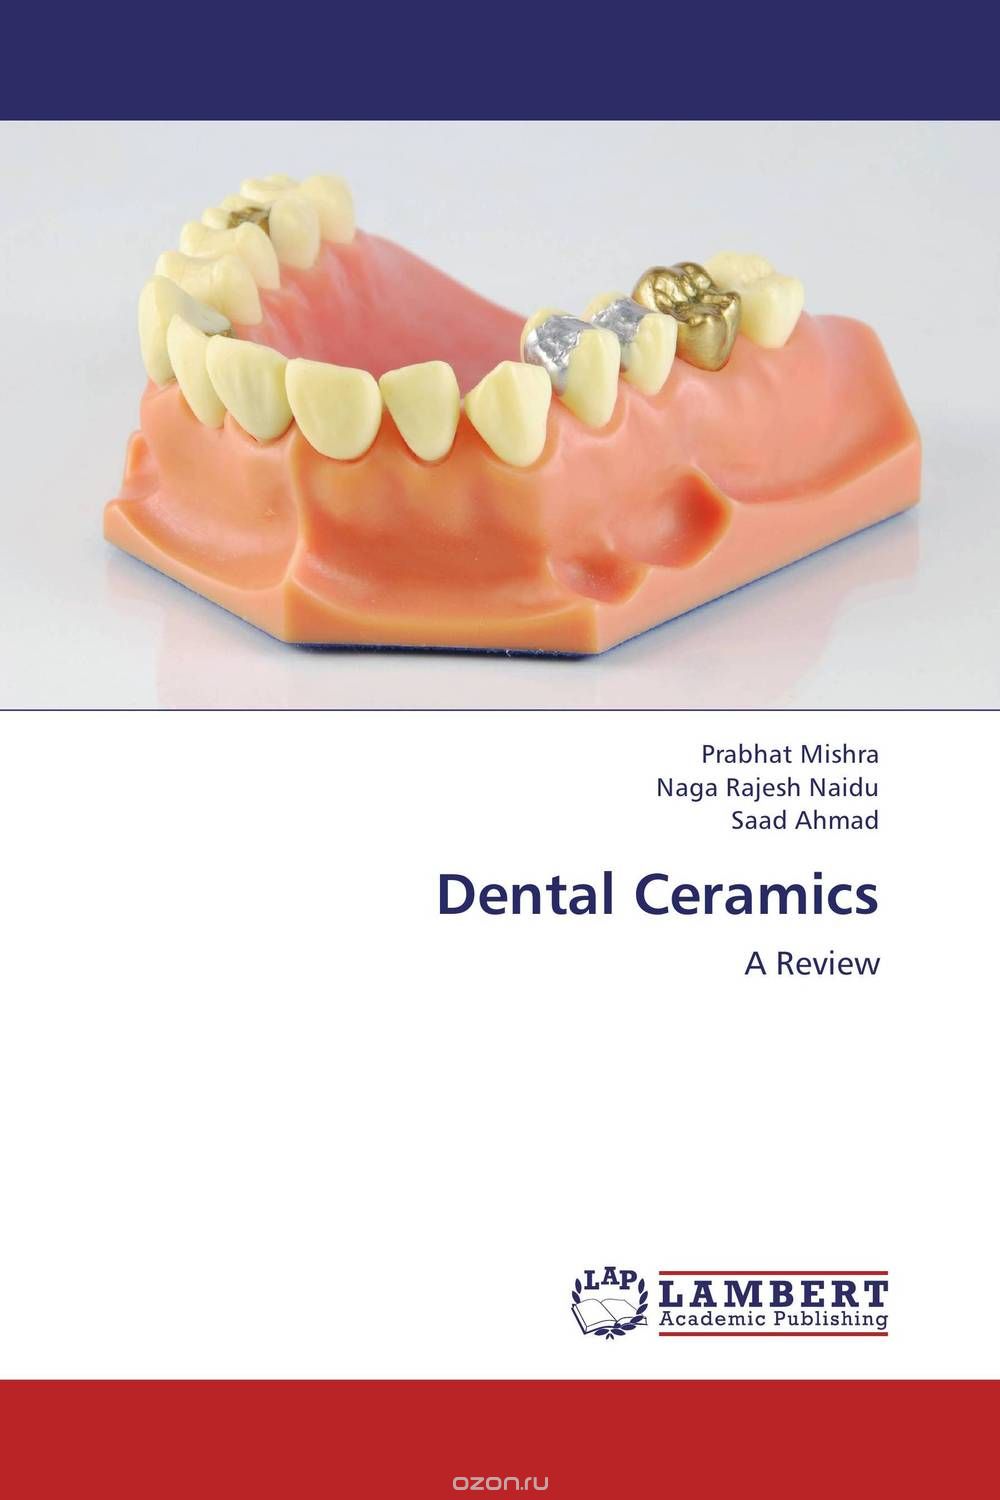 Скачать книгу "Dental Ceramics"